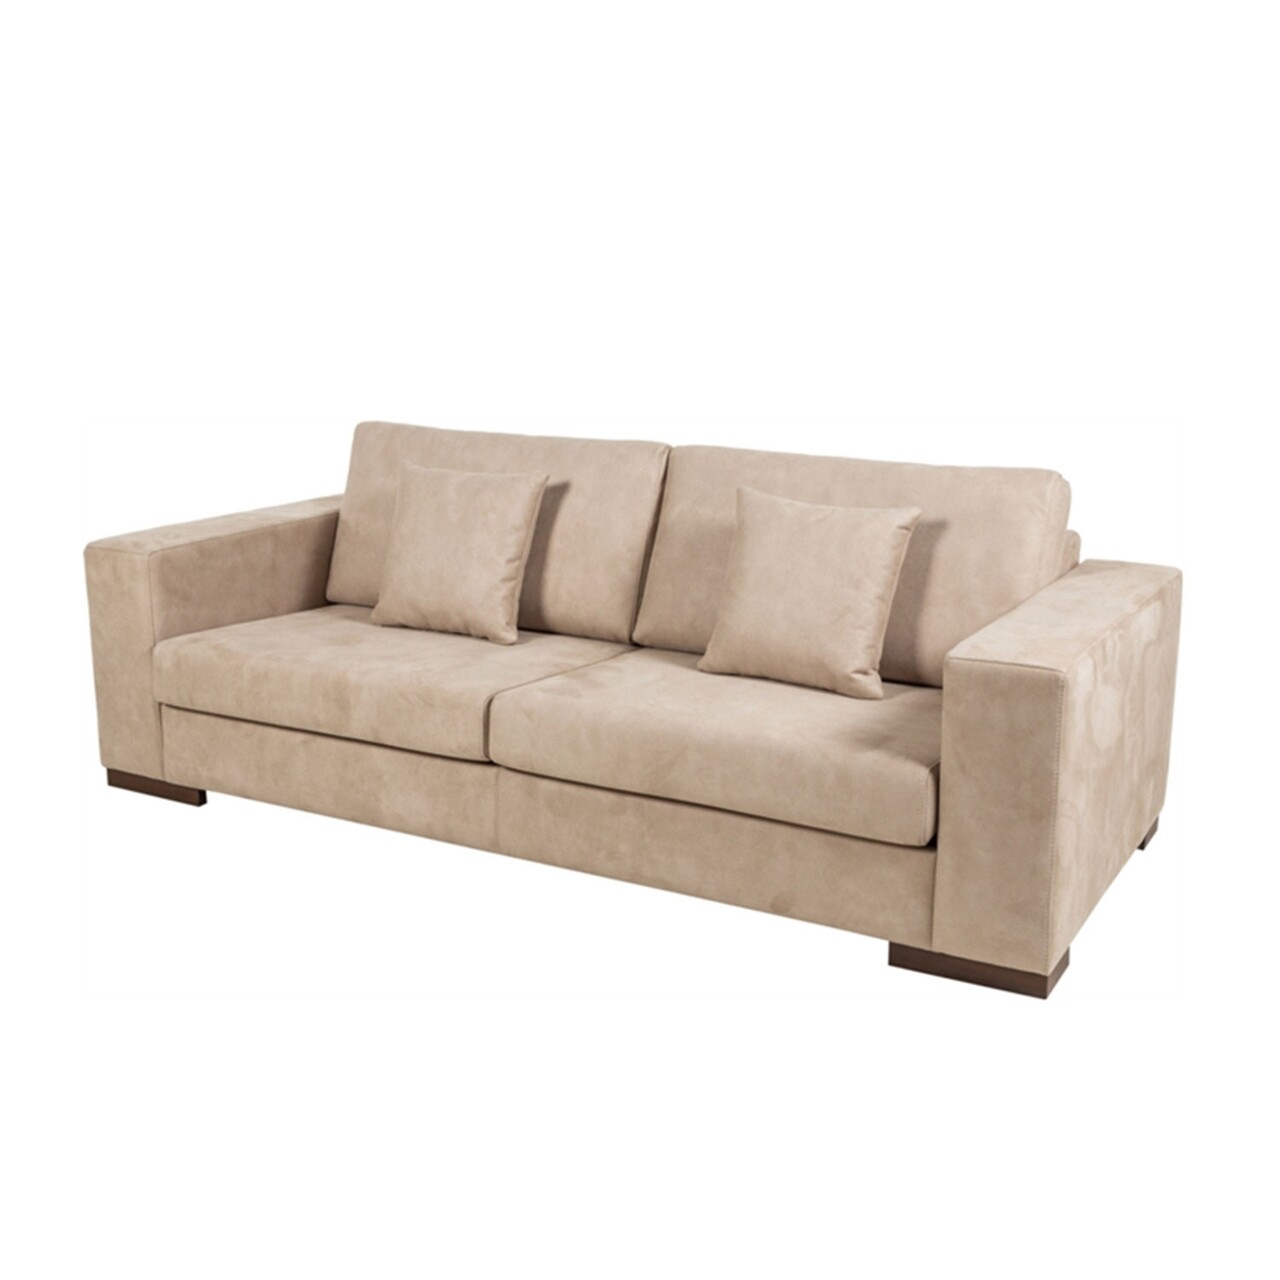 Newplus kanapé, ndesign, 2 személyes, 190x95x85 cm, fa, krémszín